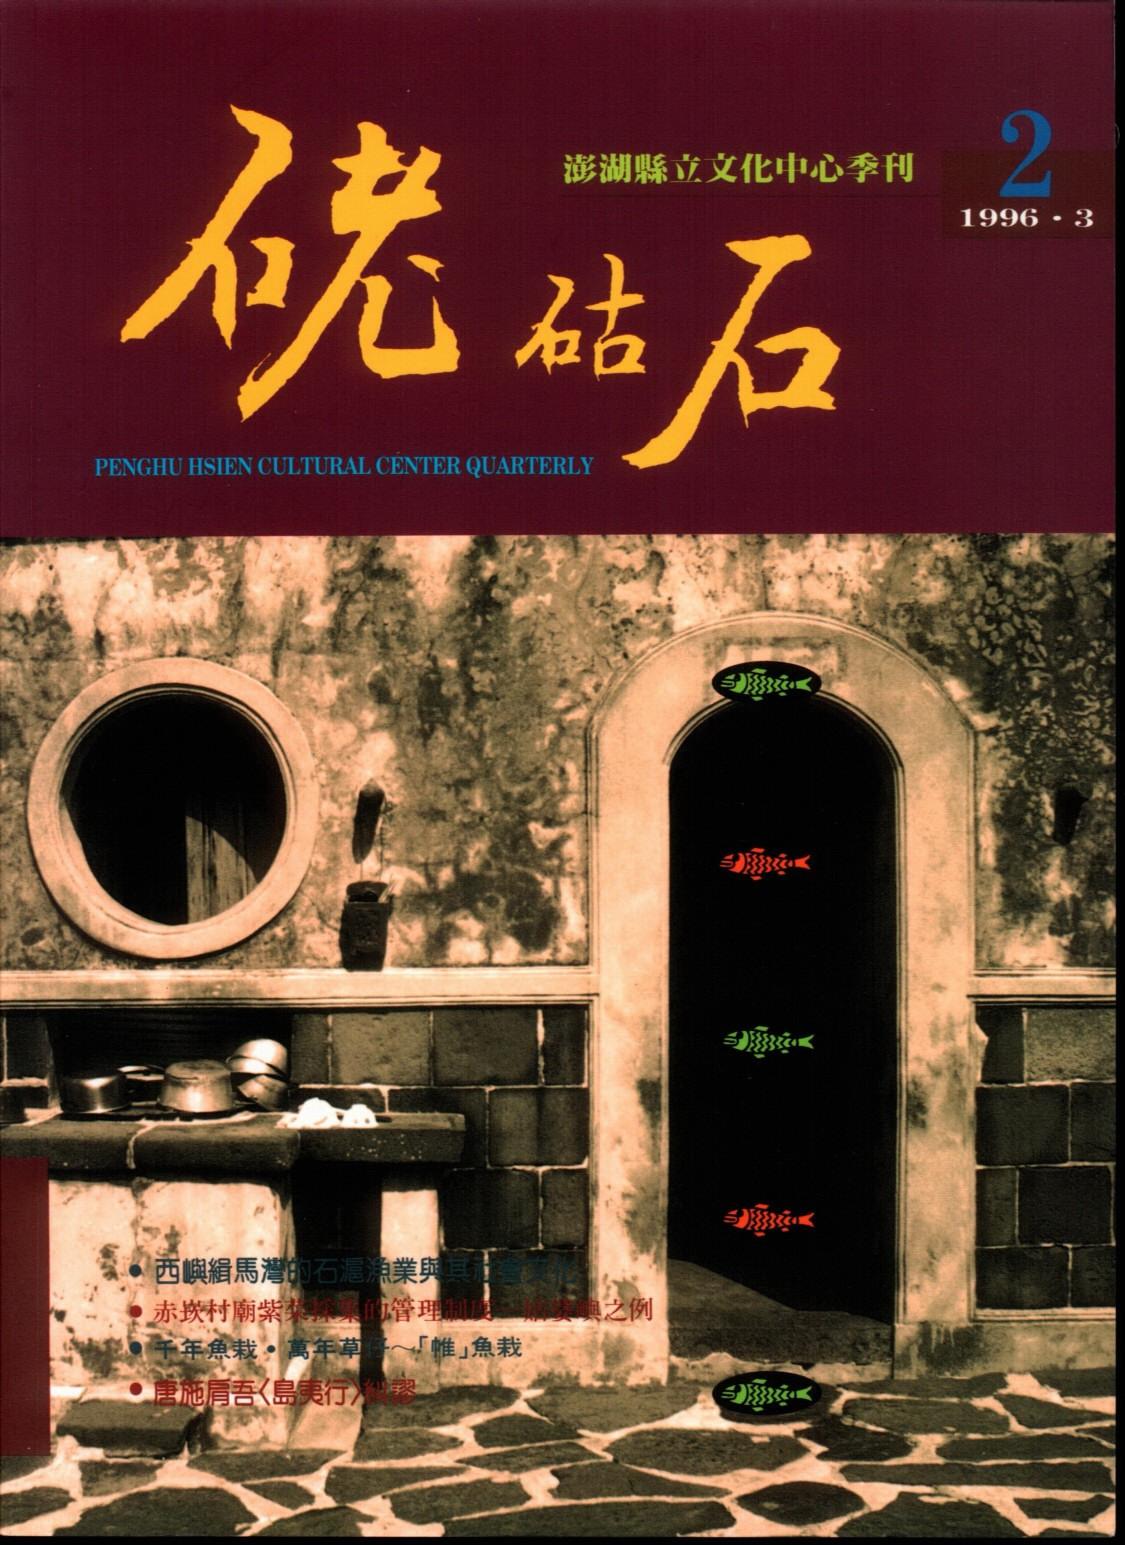 硓石古石：澎湖縣立文化中心季刊2